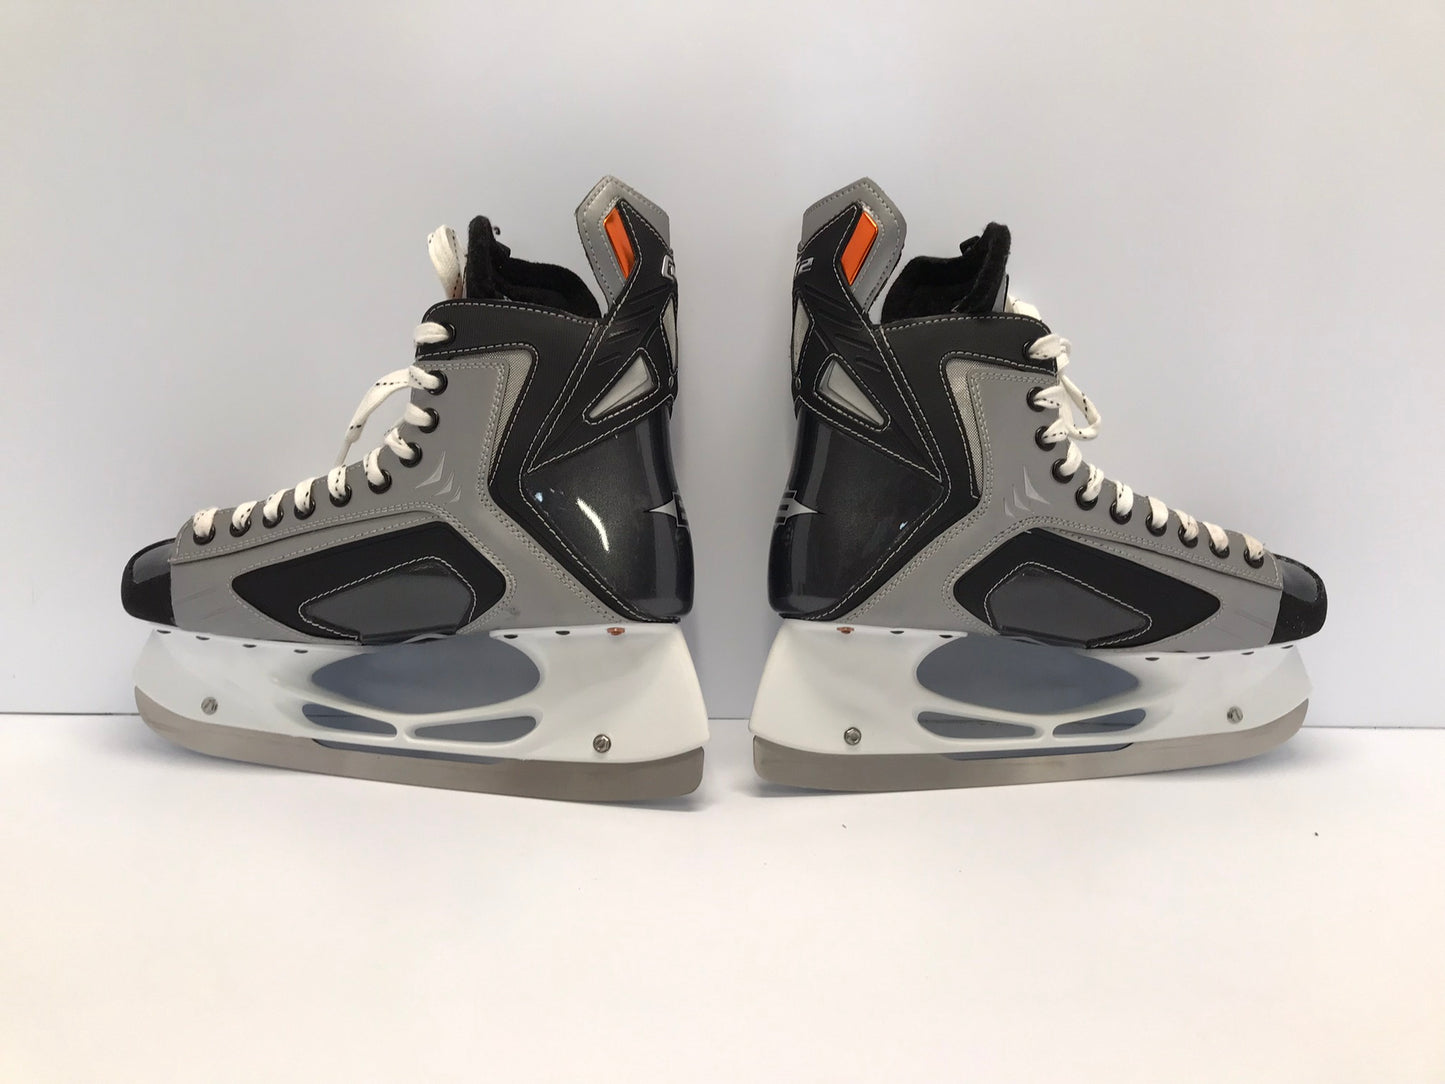 Hockey Skates Men's Size 11.5 Shoe 10 Skate Size Easton Stealth New Demo Model